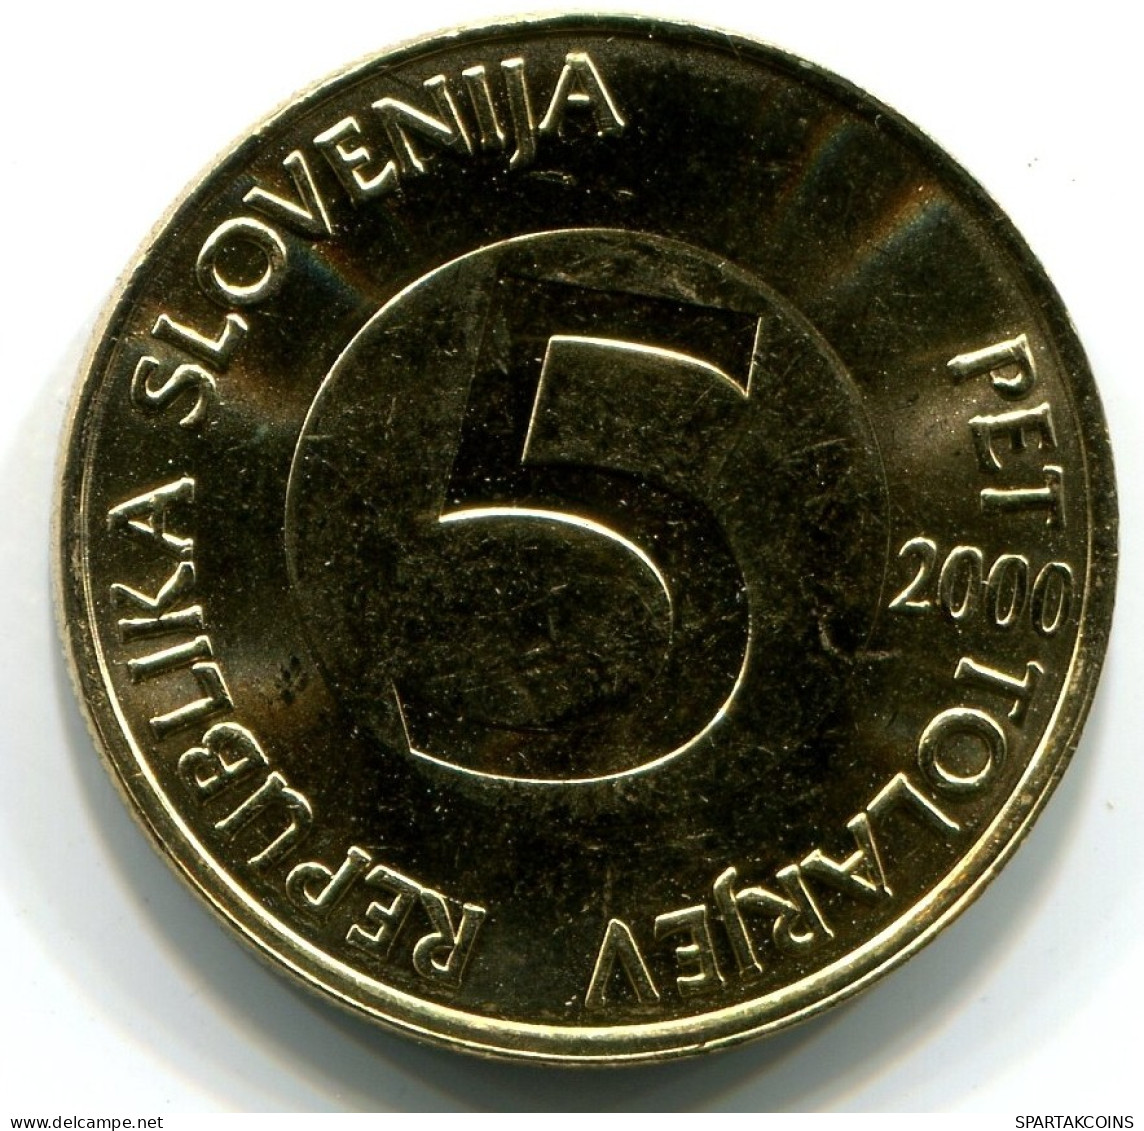 5 TOLAR 2000 SLOVENIA UNC Coin HEAD CAPRICORN #W11075.U.A - Slovenia